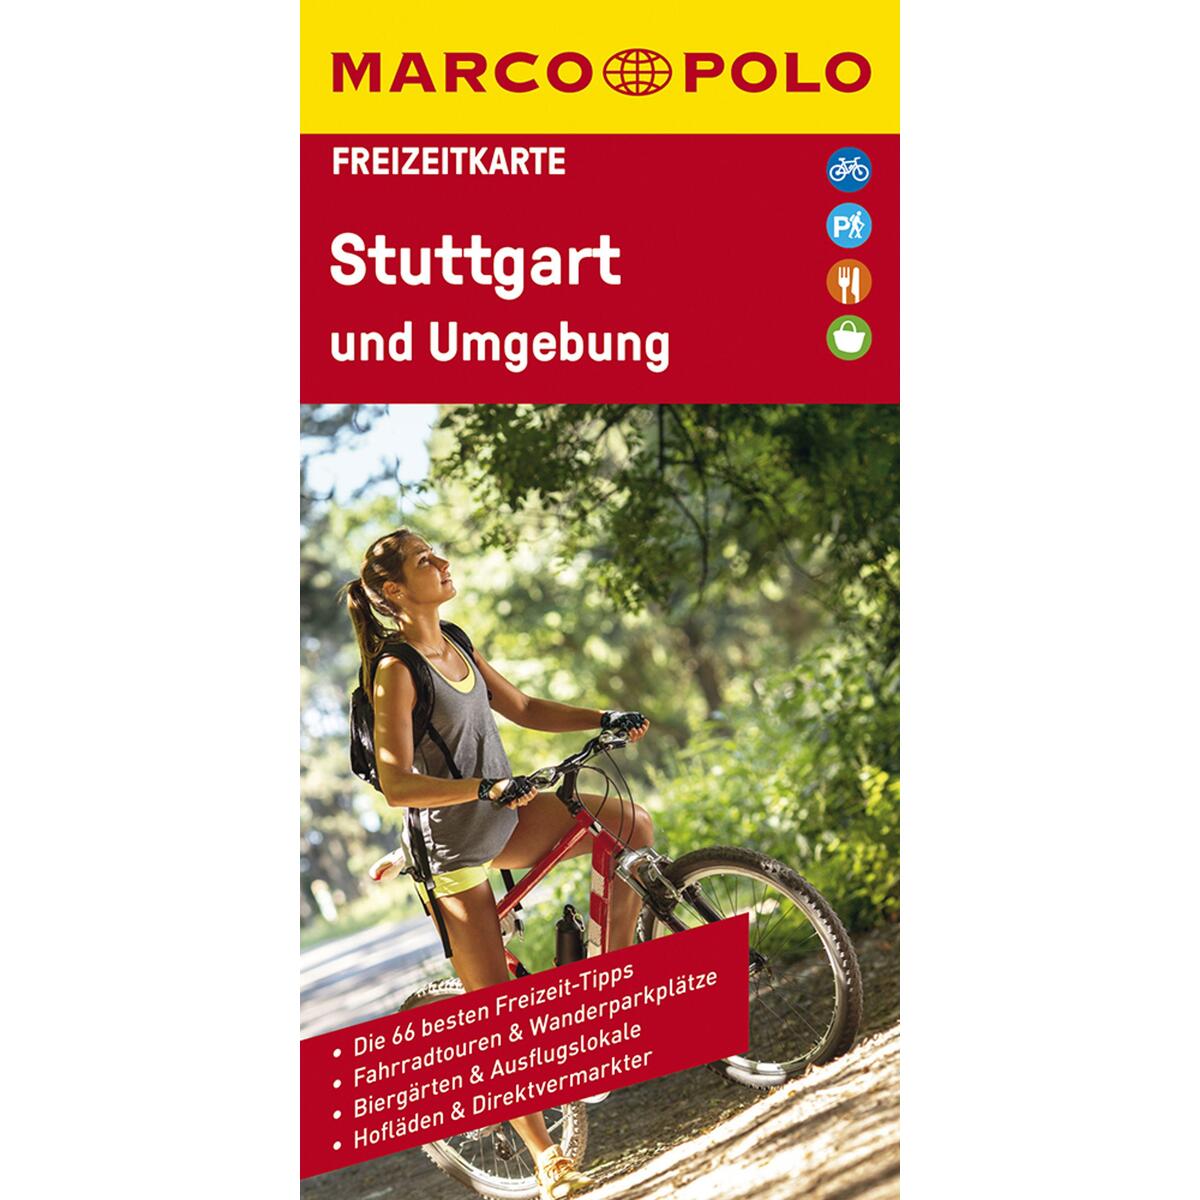 MARCO POLO Freizeitkarte 39 Stuttgart und Umgebung 1:100.000 von Mairdumont